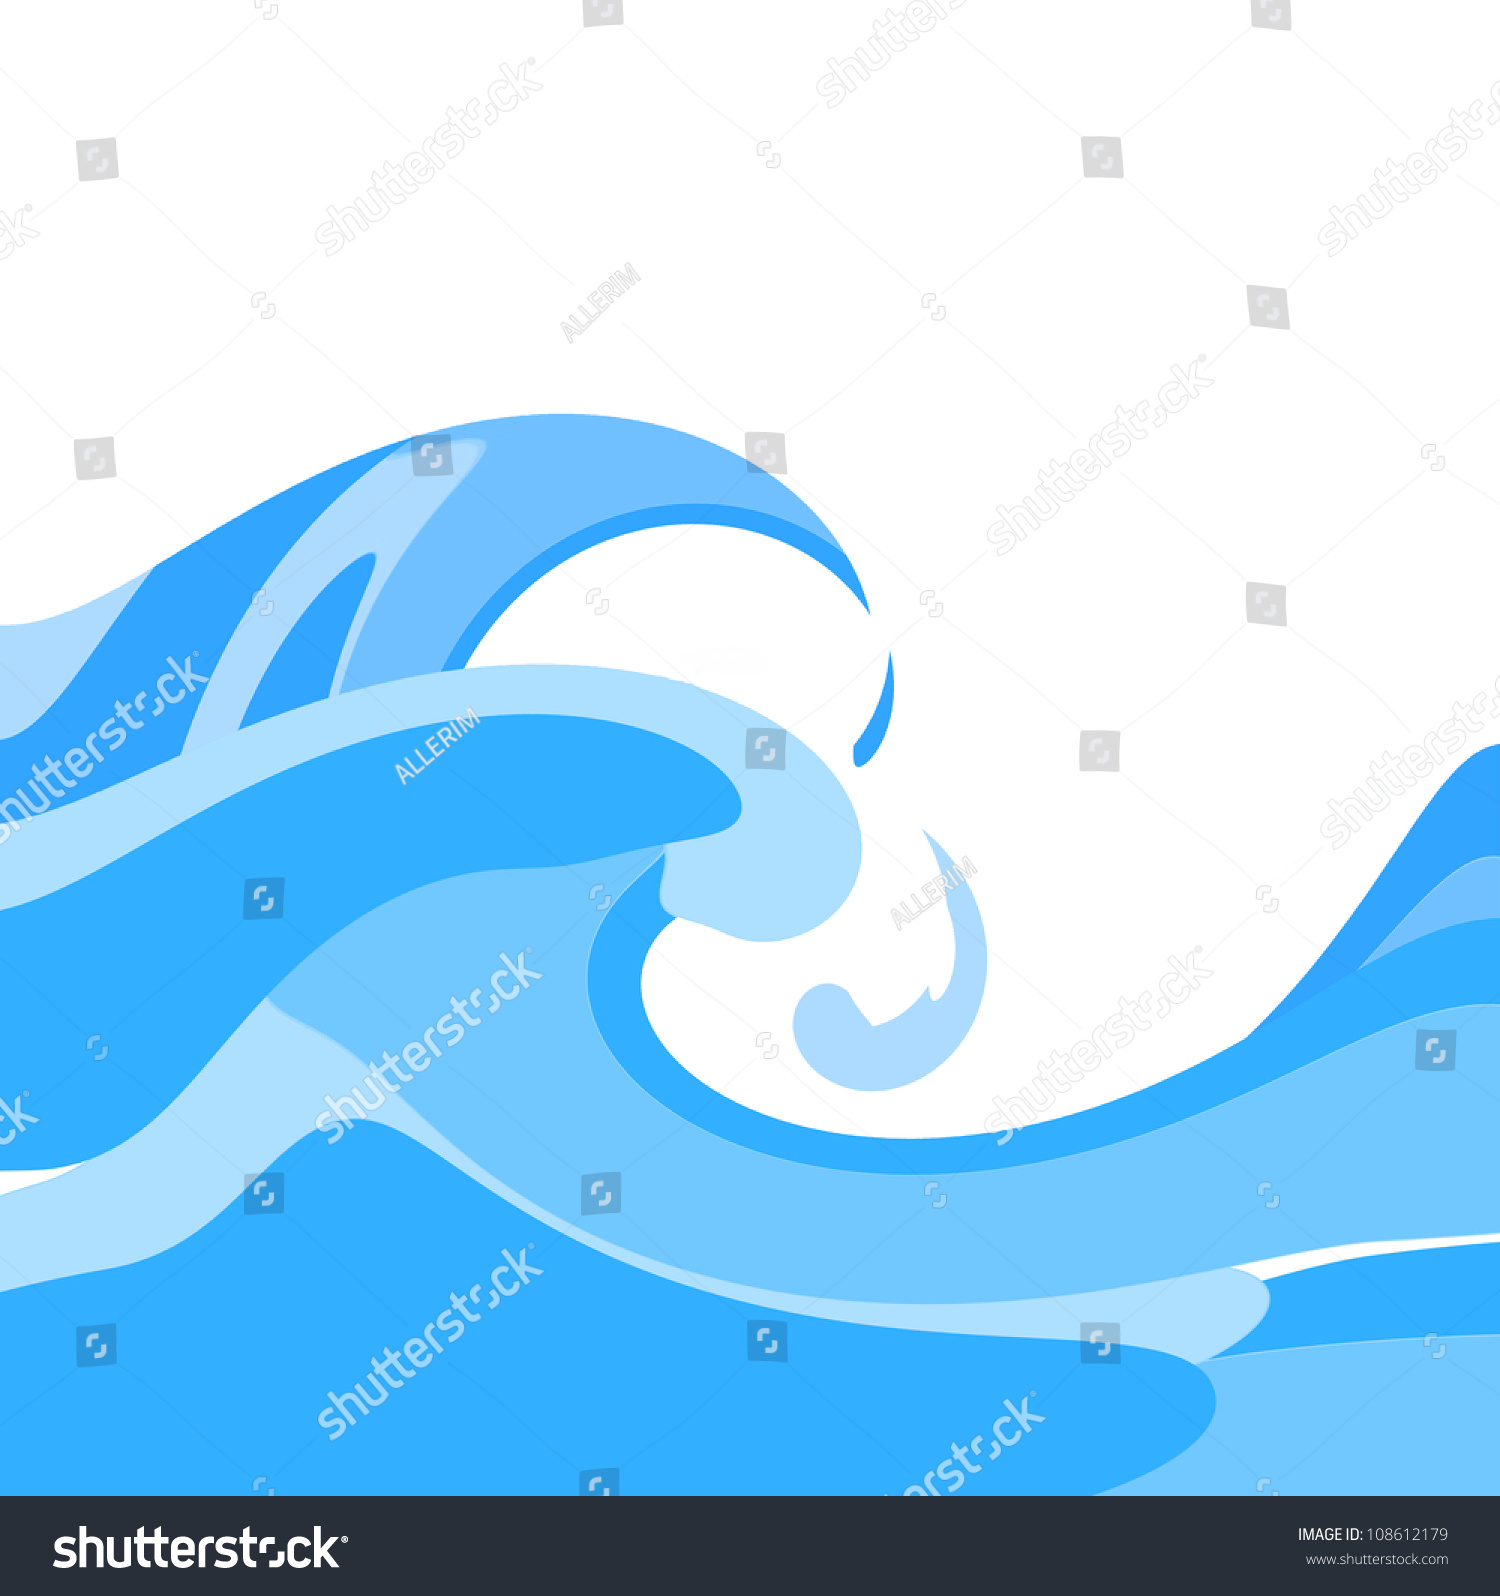 Ocean Waves Stylized Stock Photo 108612179 : Shutterstock